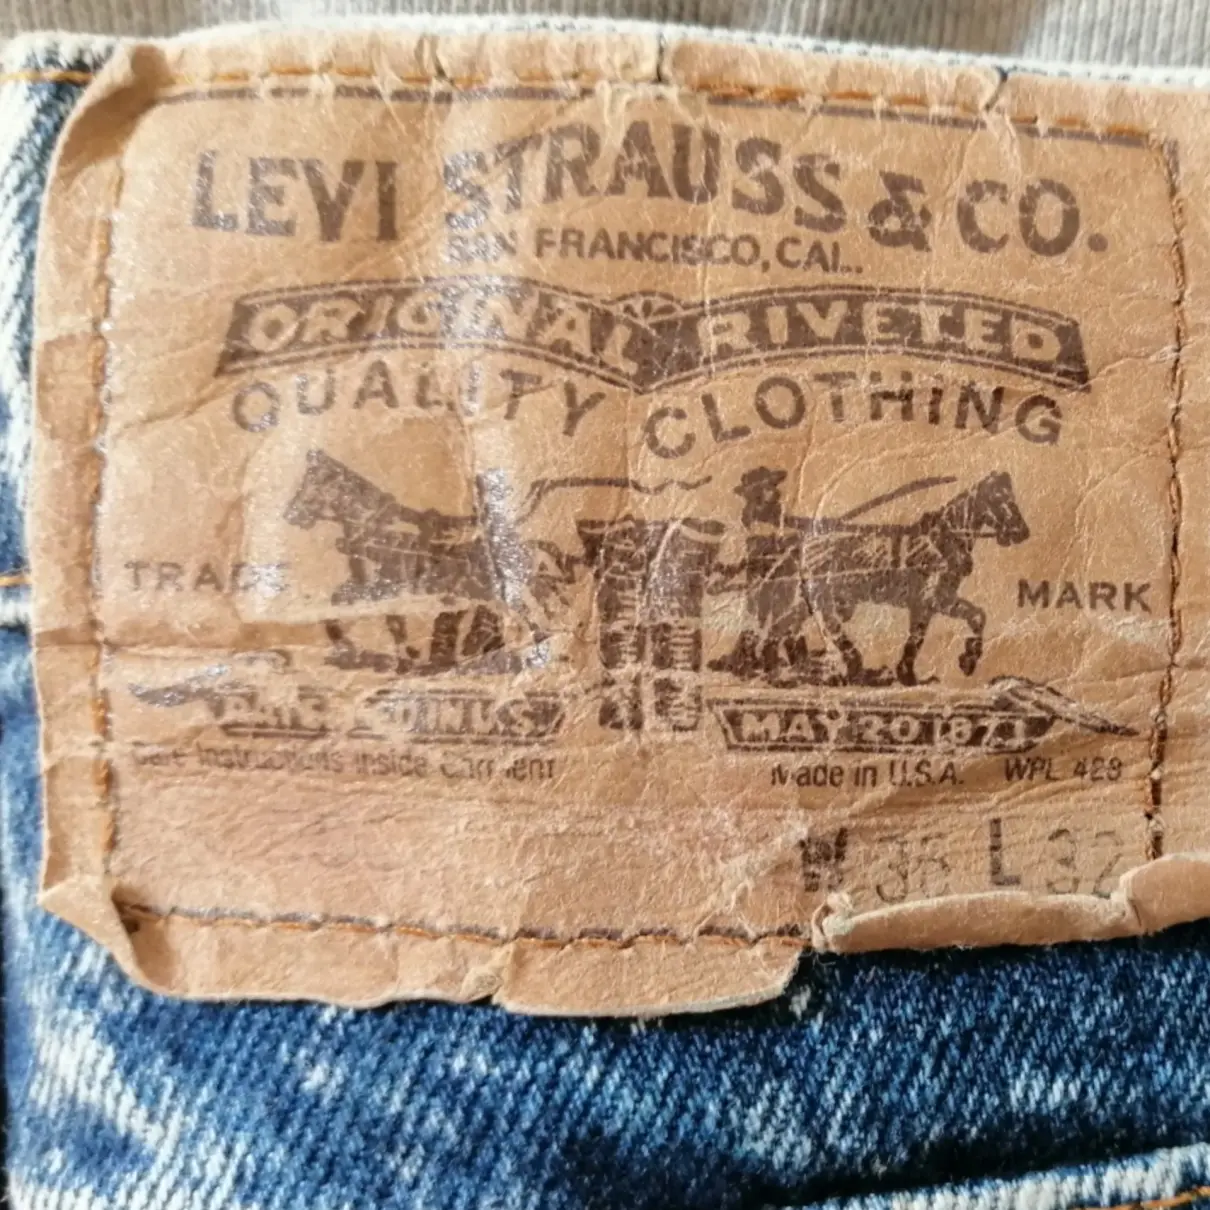 Luxury Levi's Jeans Men